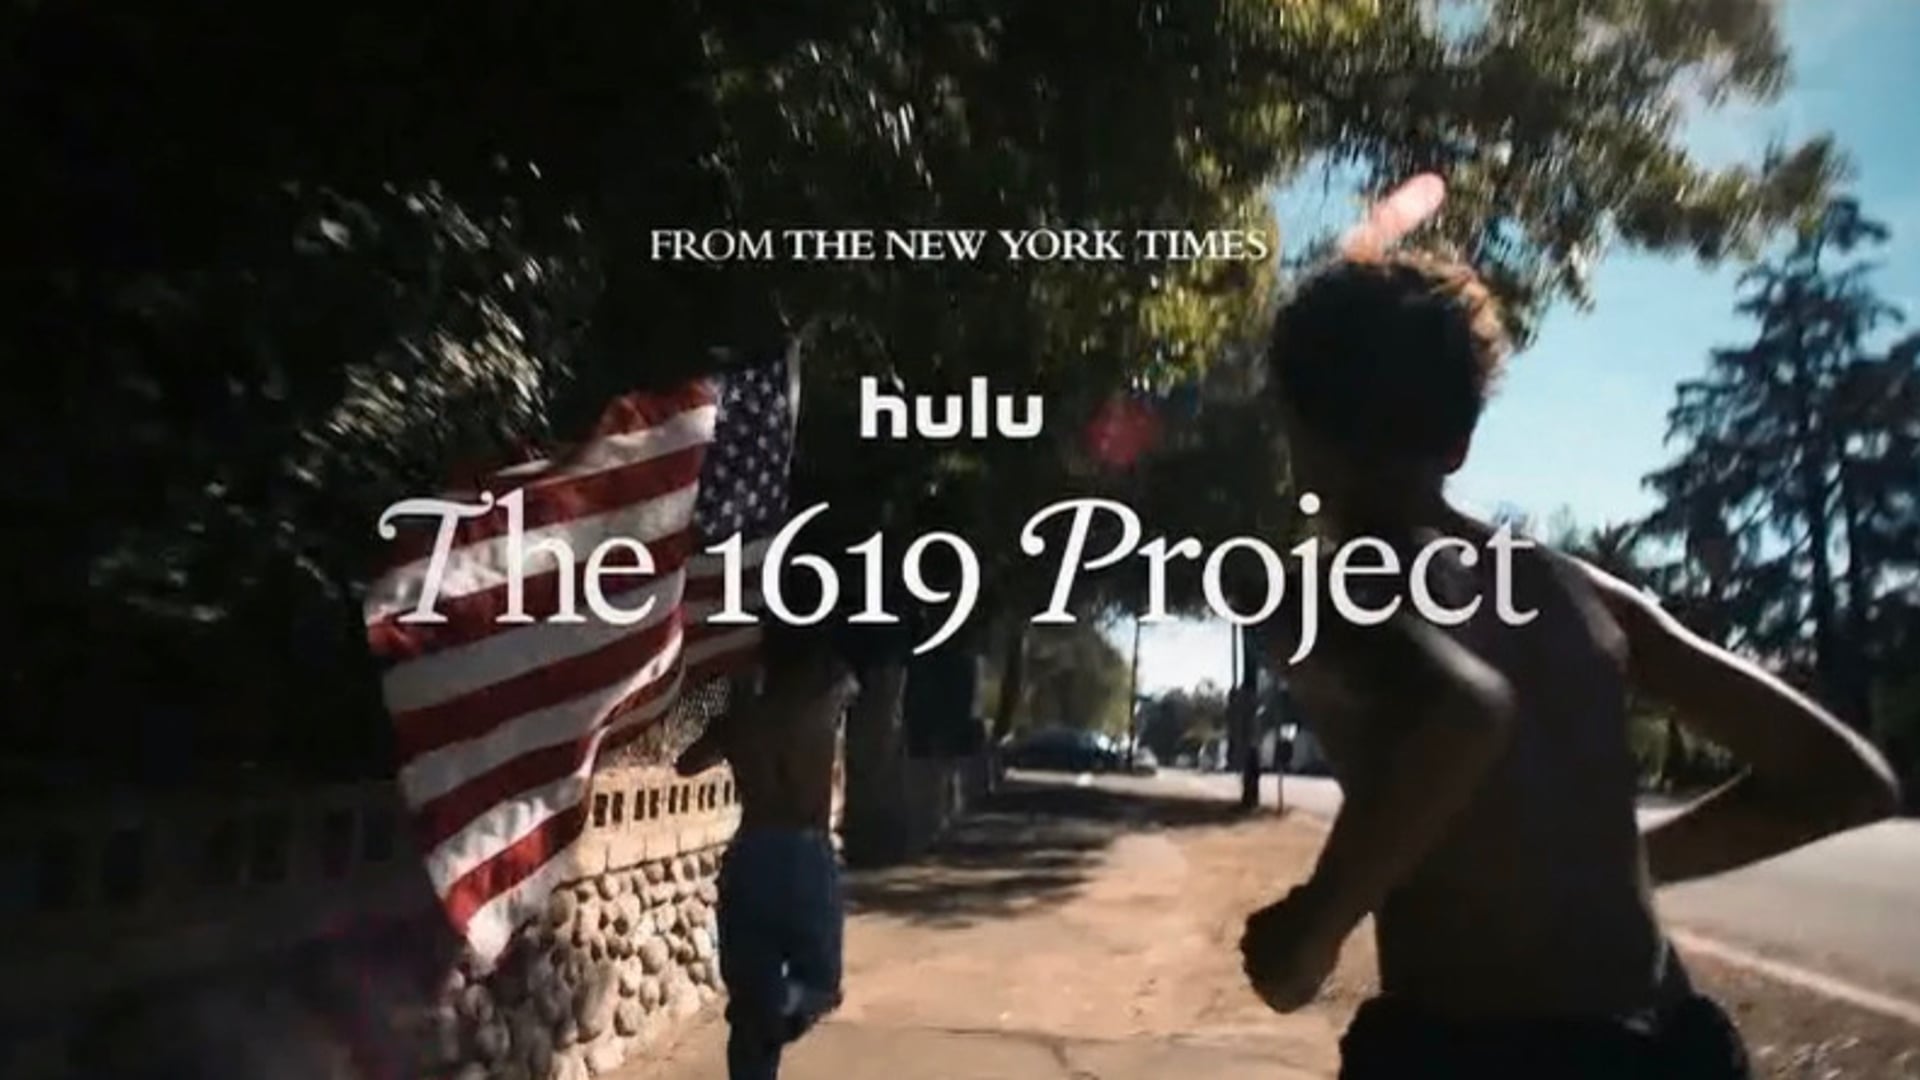 1619 Project // Hulu